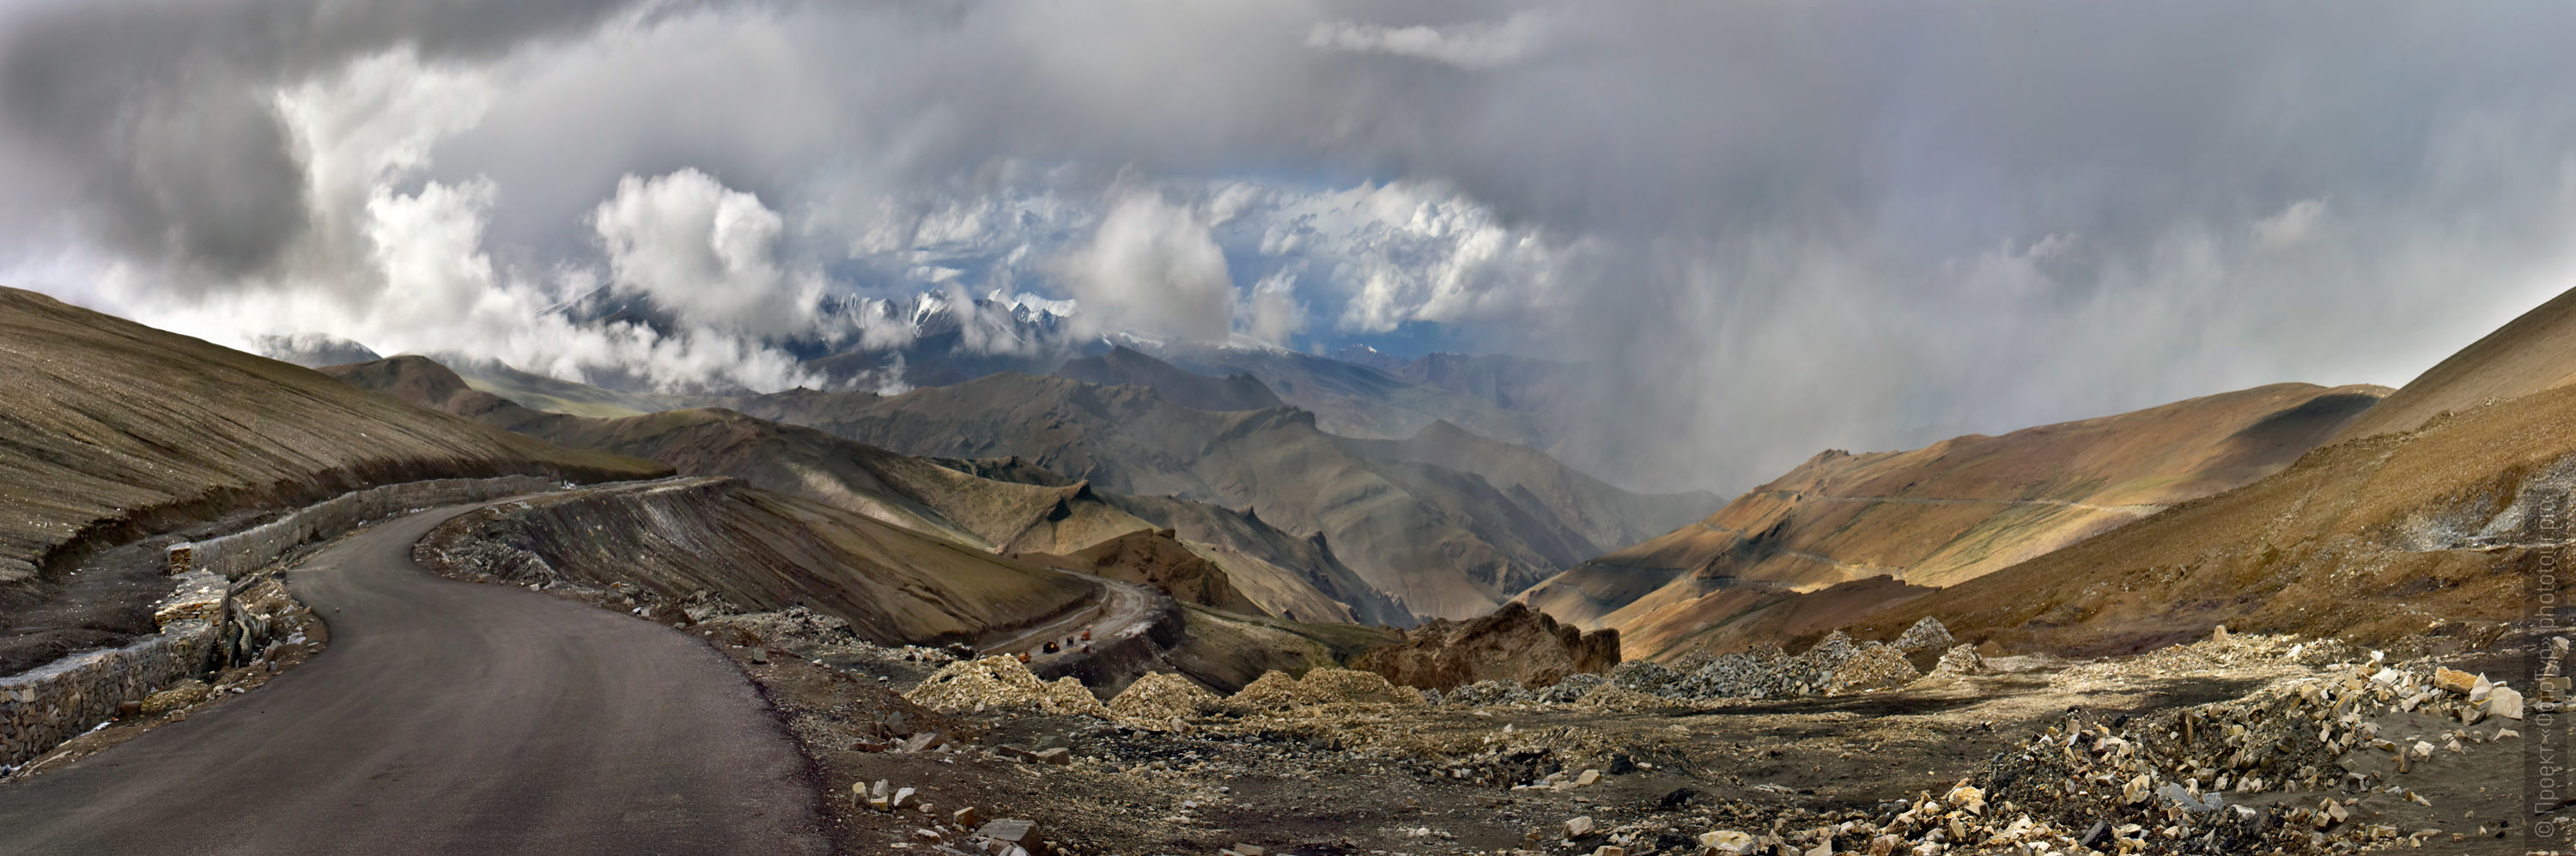 Перевал Тангланг Ла (5325 м), Лех-Манальское Шоссе, Ладакх. Тур по Малому Тибету, 2017 год.